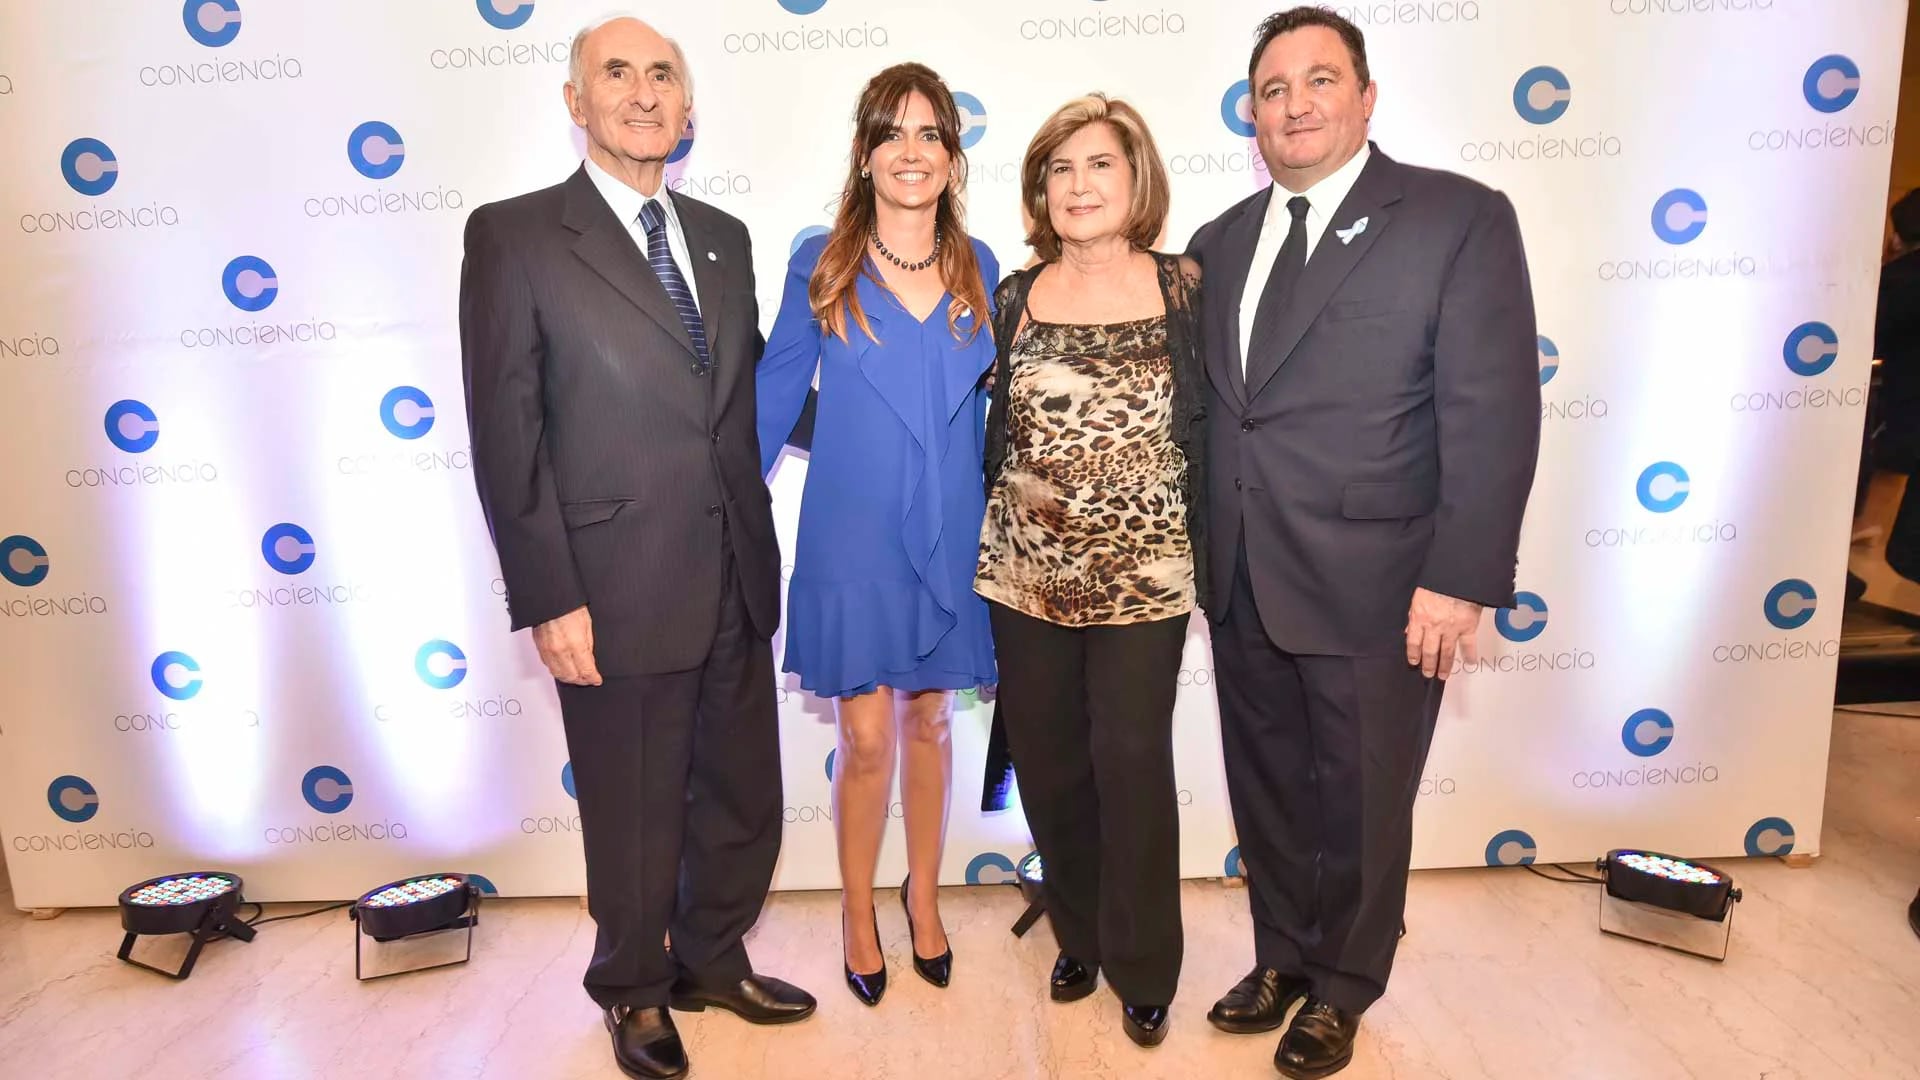 El ex presidente de la Nación, Fernando de la Rúa; Beby Lacroze, presidenta de la Asociación Conciencia; Inés Pertiné y Alejandro Macfarlane